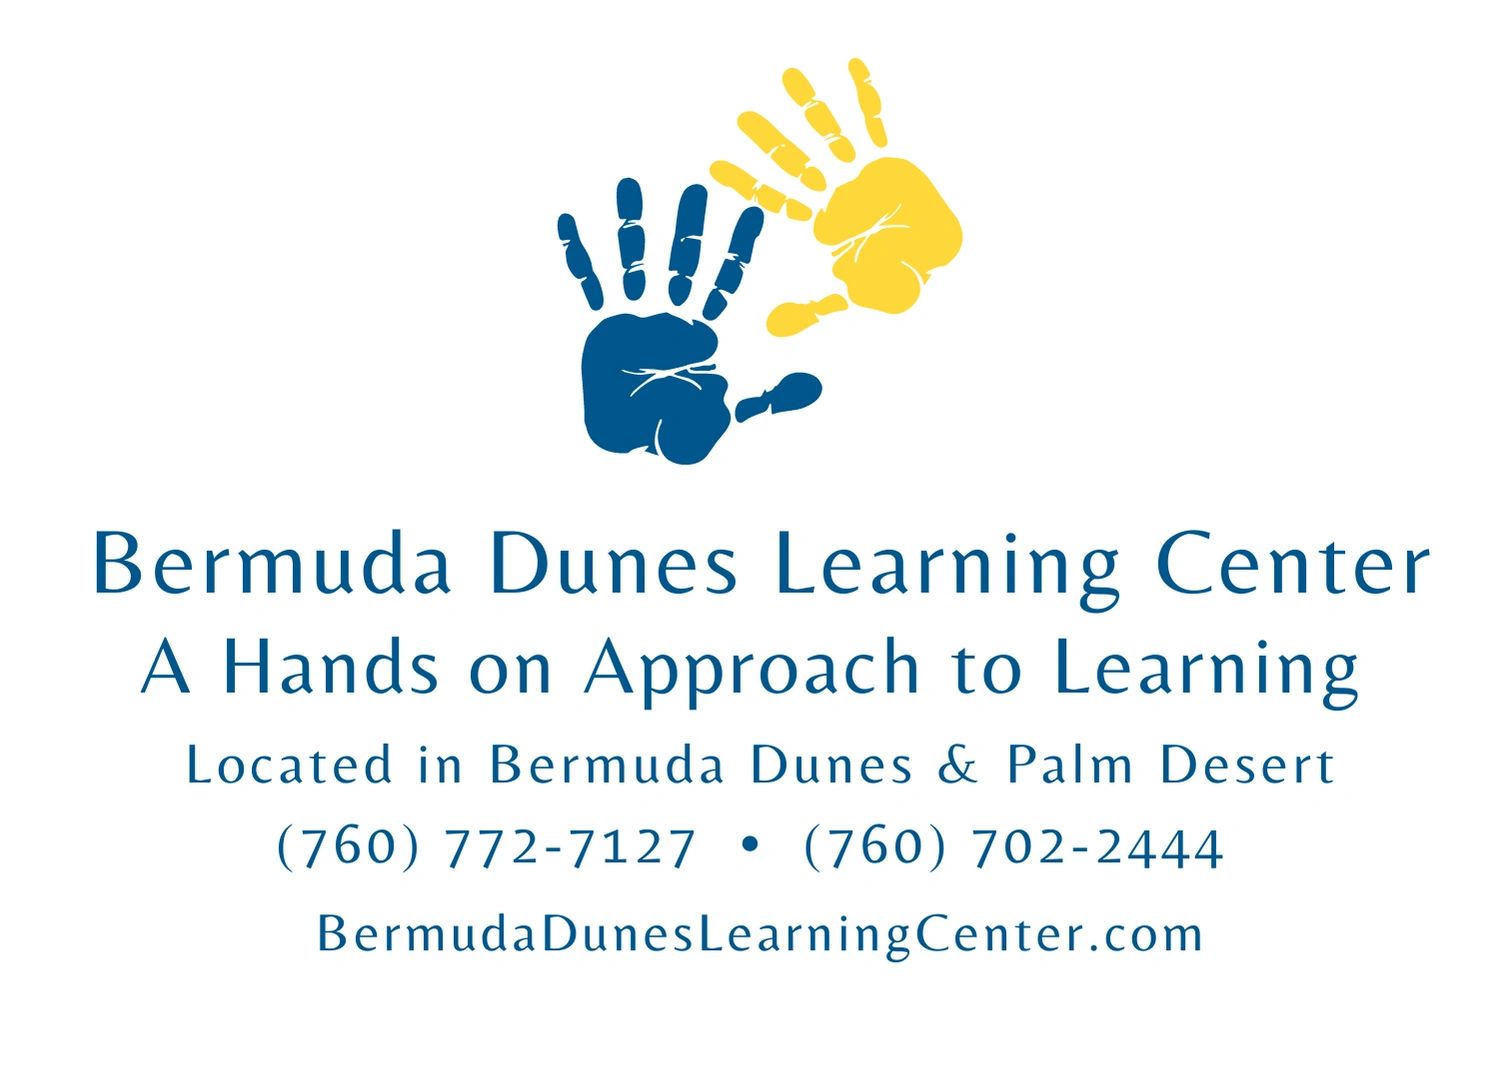 (c) Bermudaduneslearningcenter.com